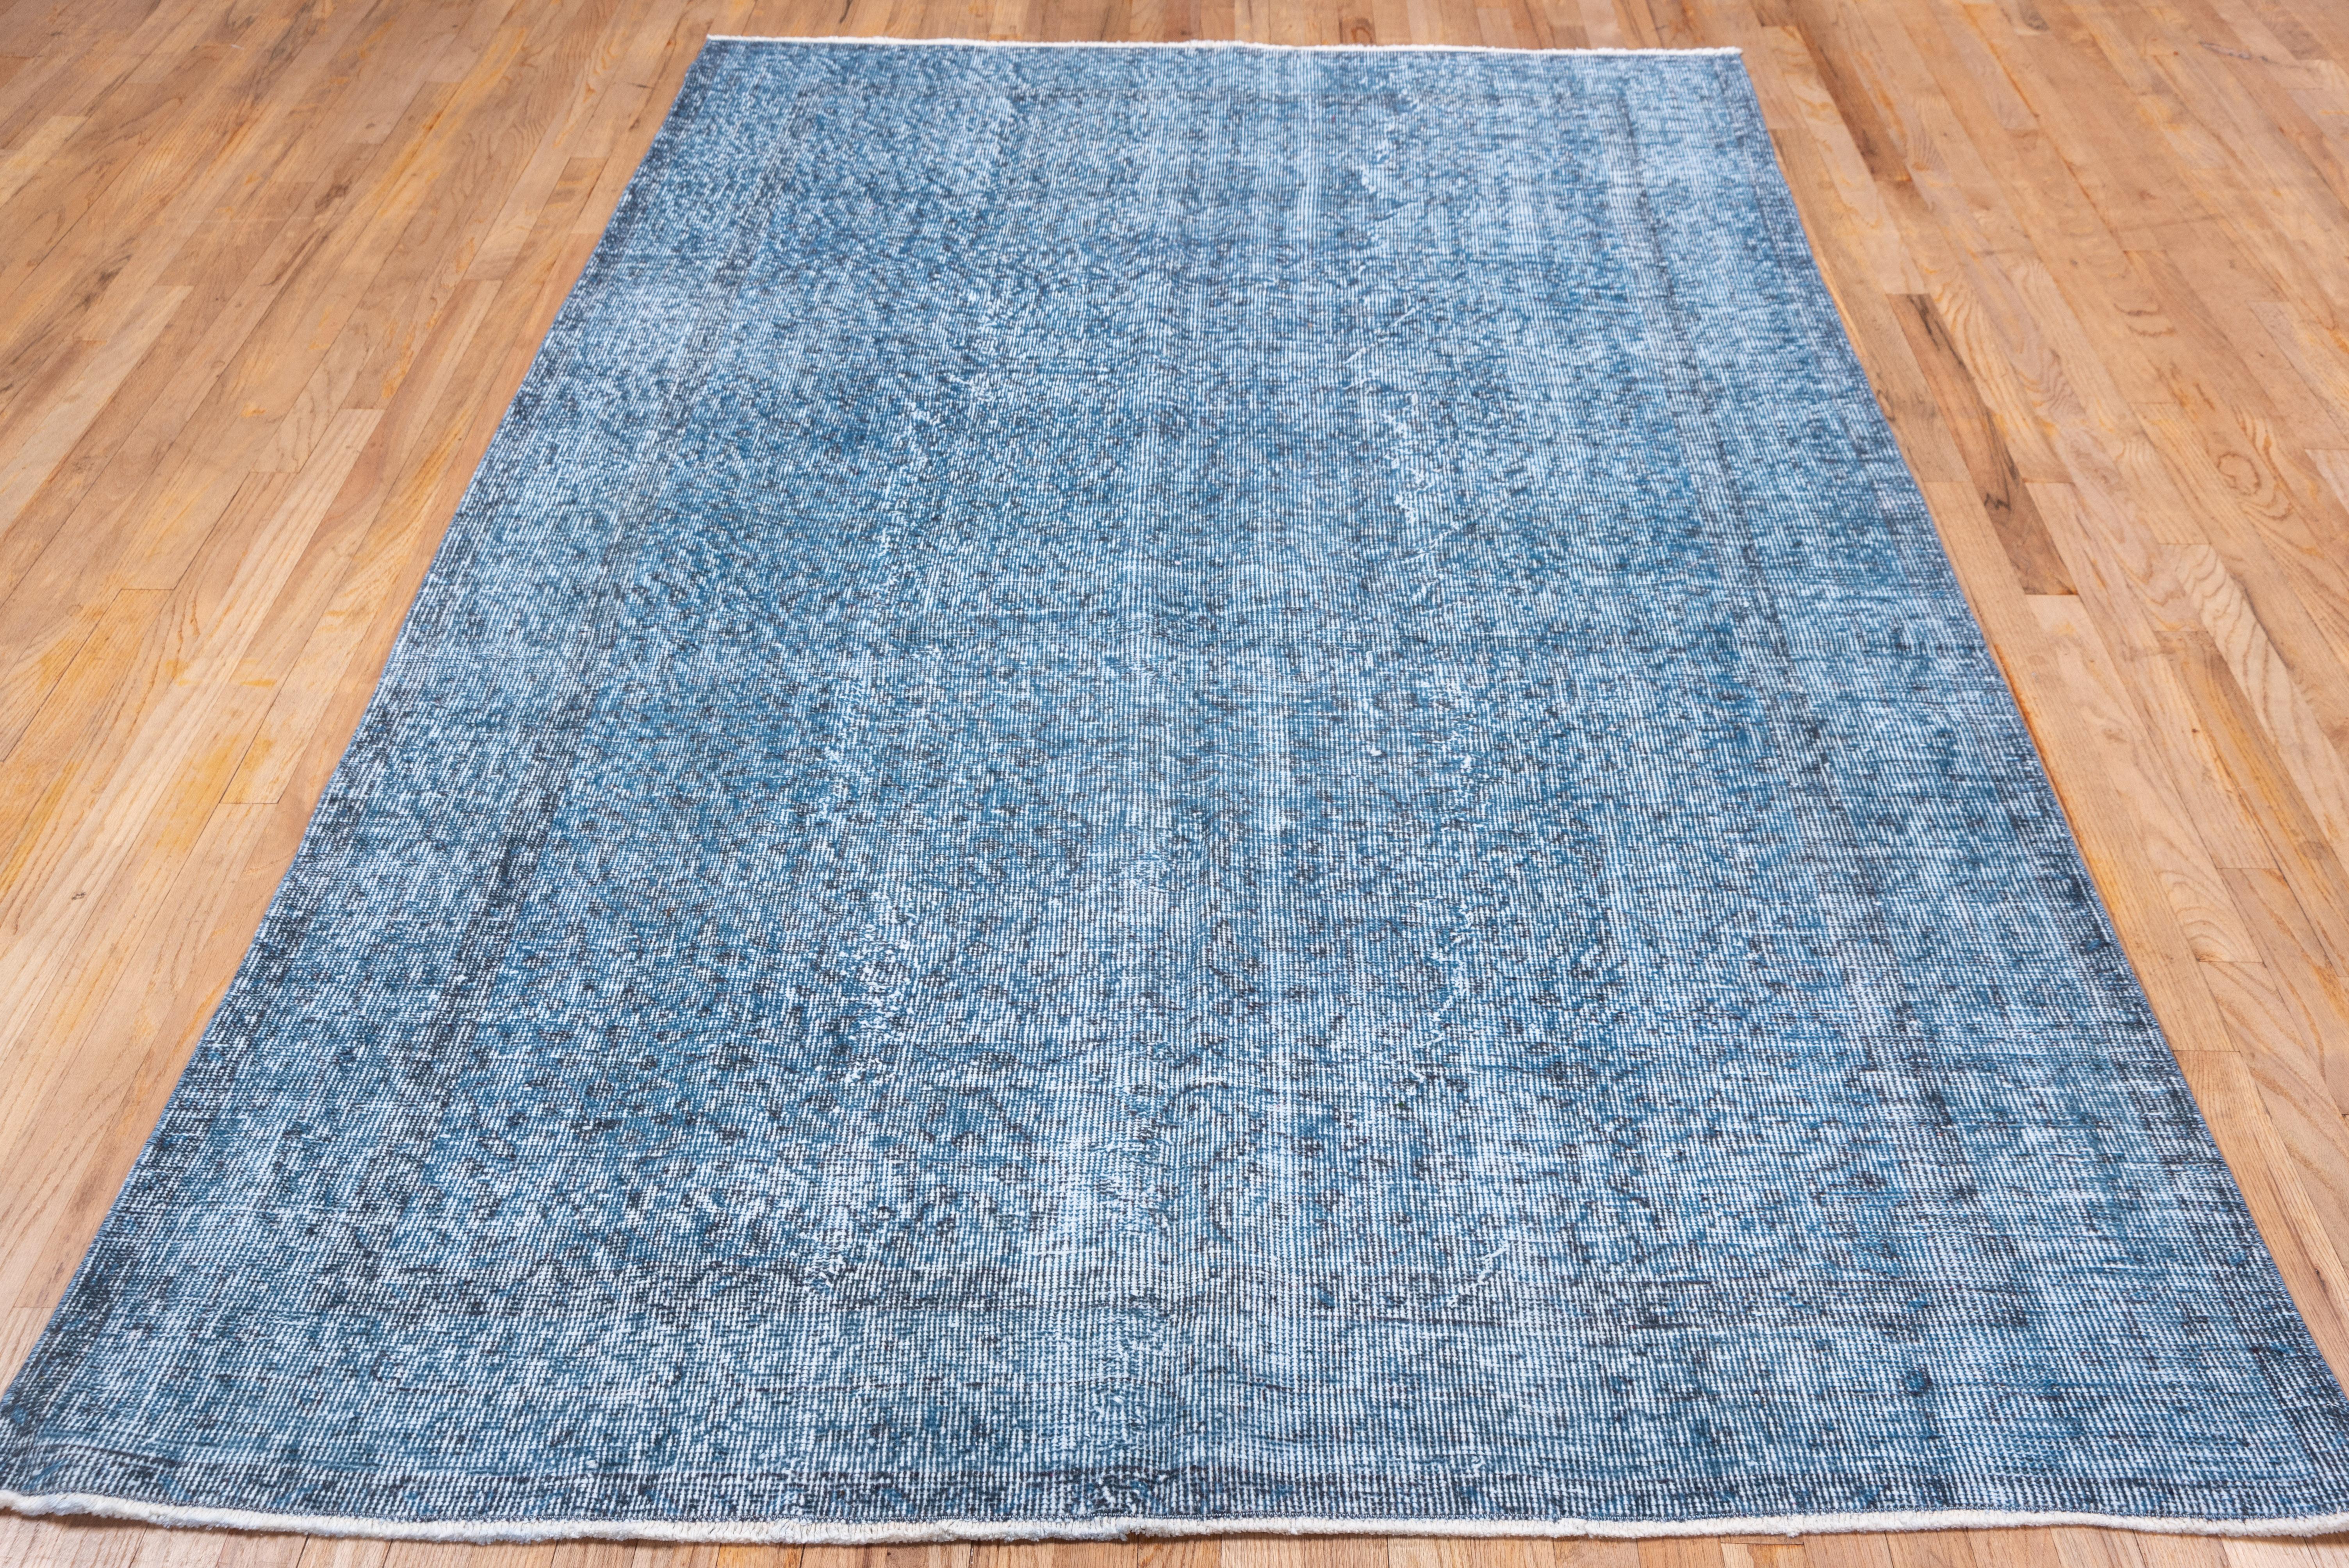 Dieser leuchtend blaue türkische Overdye-Teppich hat ein Muster, das durch die Abnutzung jenseits der allgemeinen Notlage definiert ist. Vertikale und horizontale weiße Streifen kreuzen sich in der Nähe der Mitte. Shabby-Chic-Bedingungen und kann